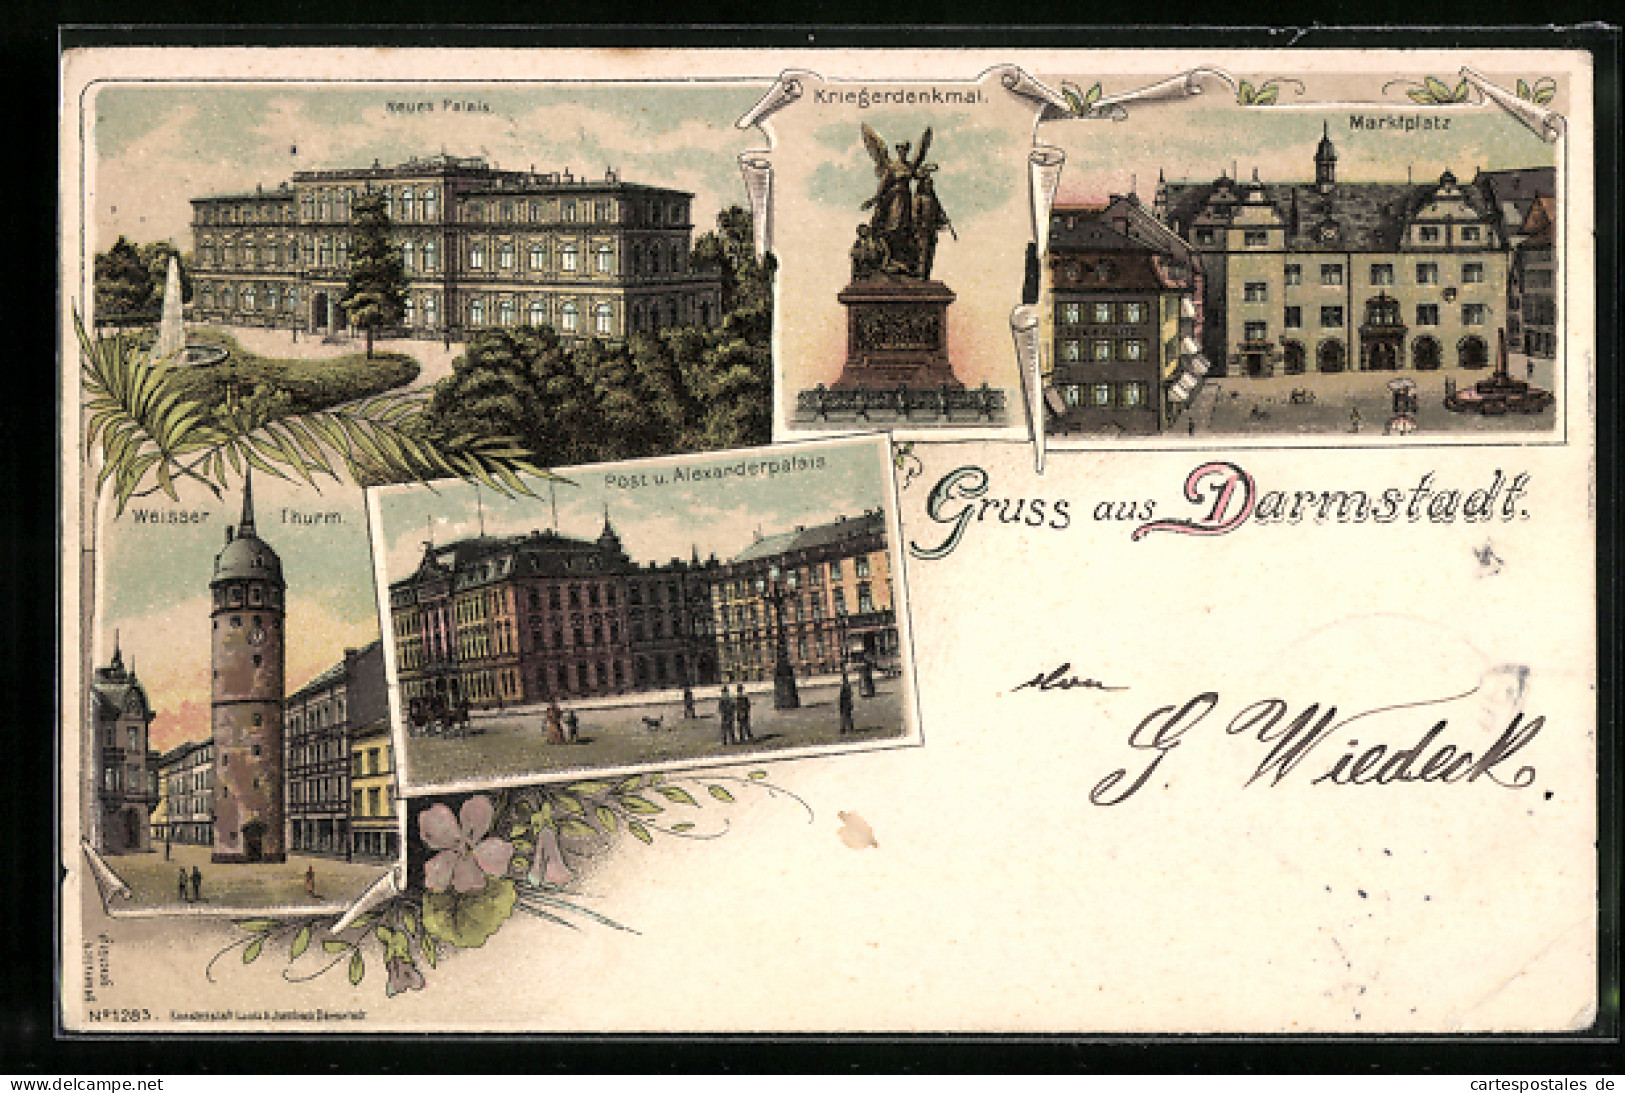 Lithographie Darmstadt, Neus Palais, Post U. Alexanderpalais, Weisser Turm  - Darmstadt